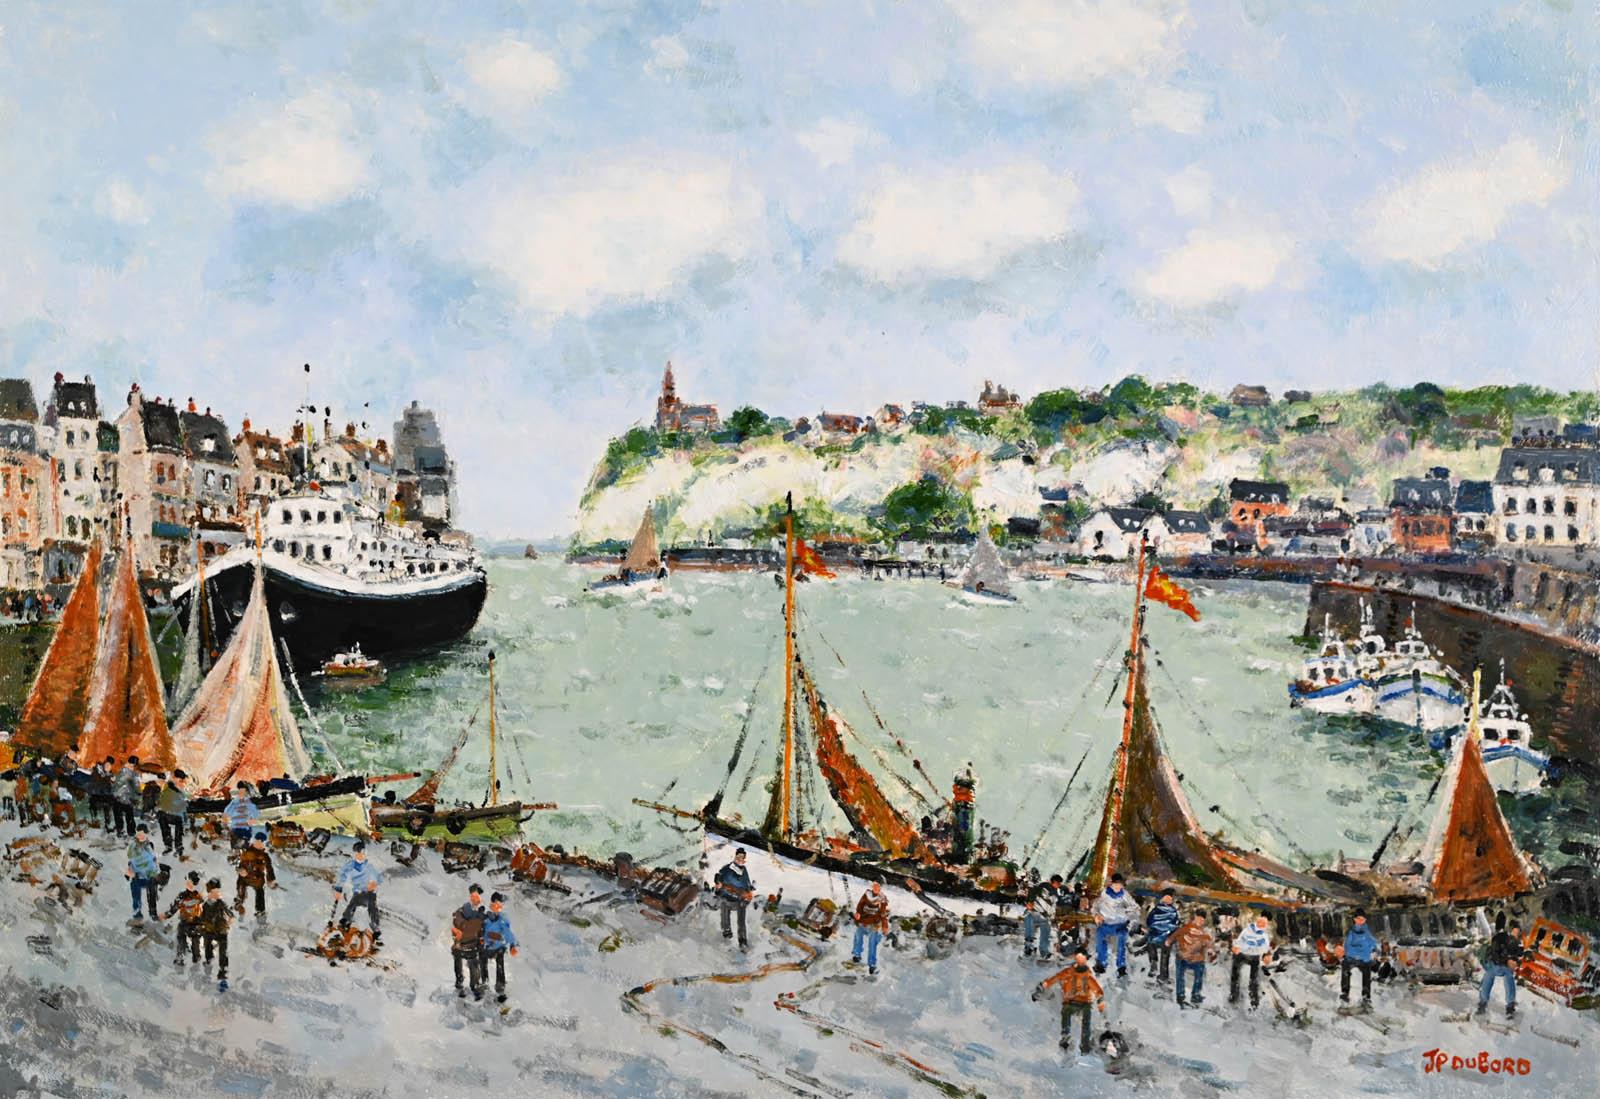 Les vieux Gréements dans le port de Dieppe - Gray Figurative Painting by Jean-Pierre Dubord